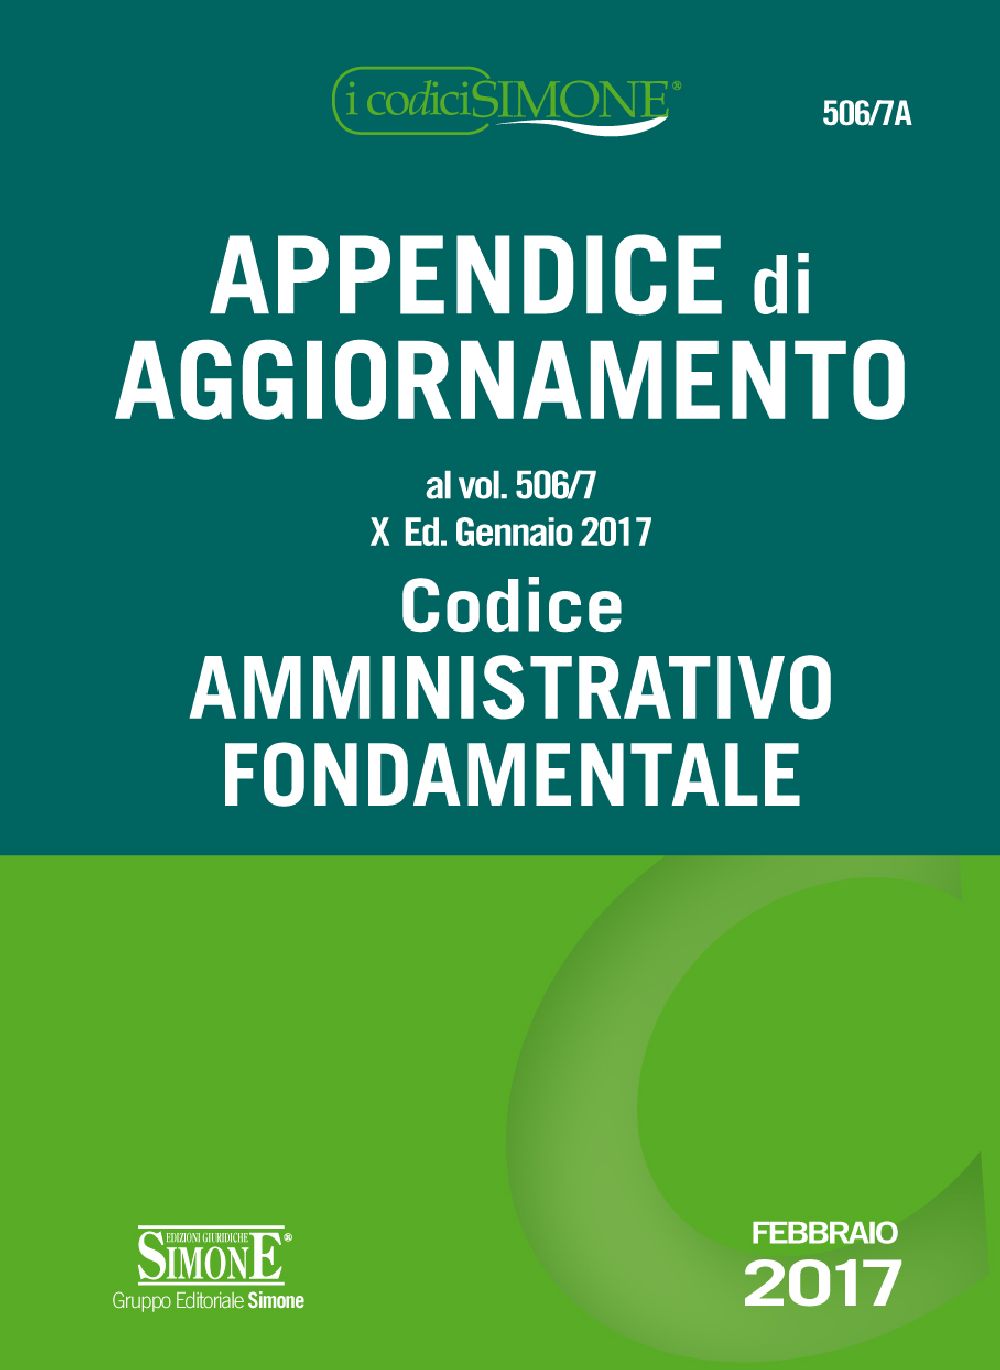 Appendice aggiornamento - Codice Amministrativo Fondamentale